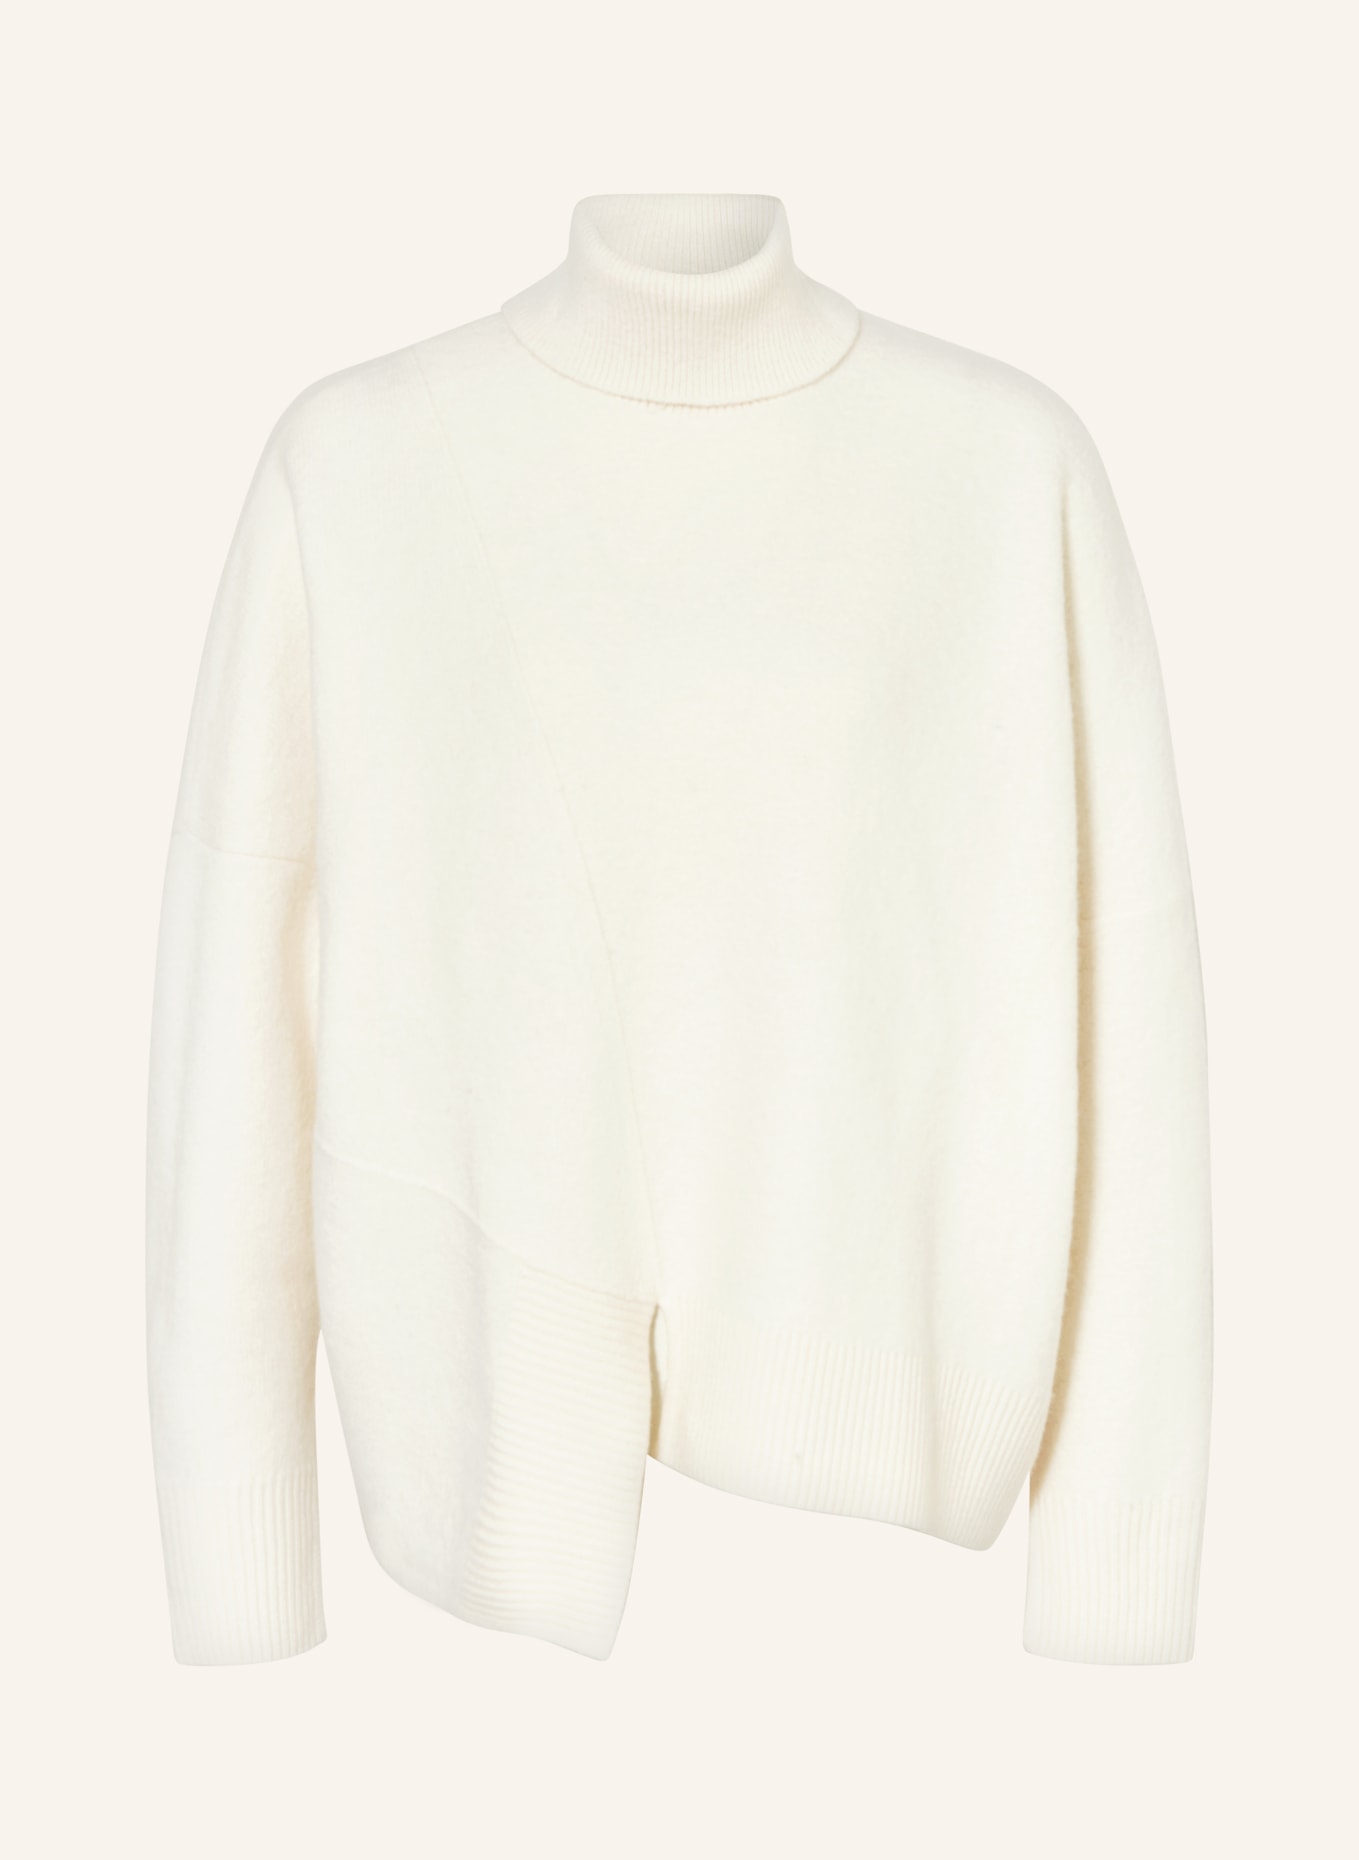 COS Turtleneck sweater, Color: ECRU (Image 1)